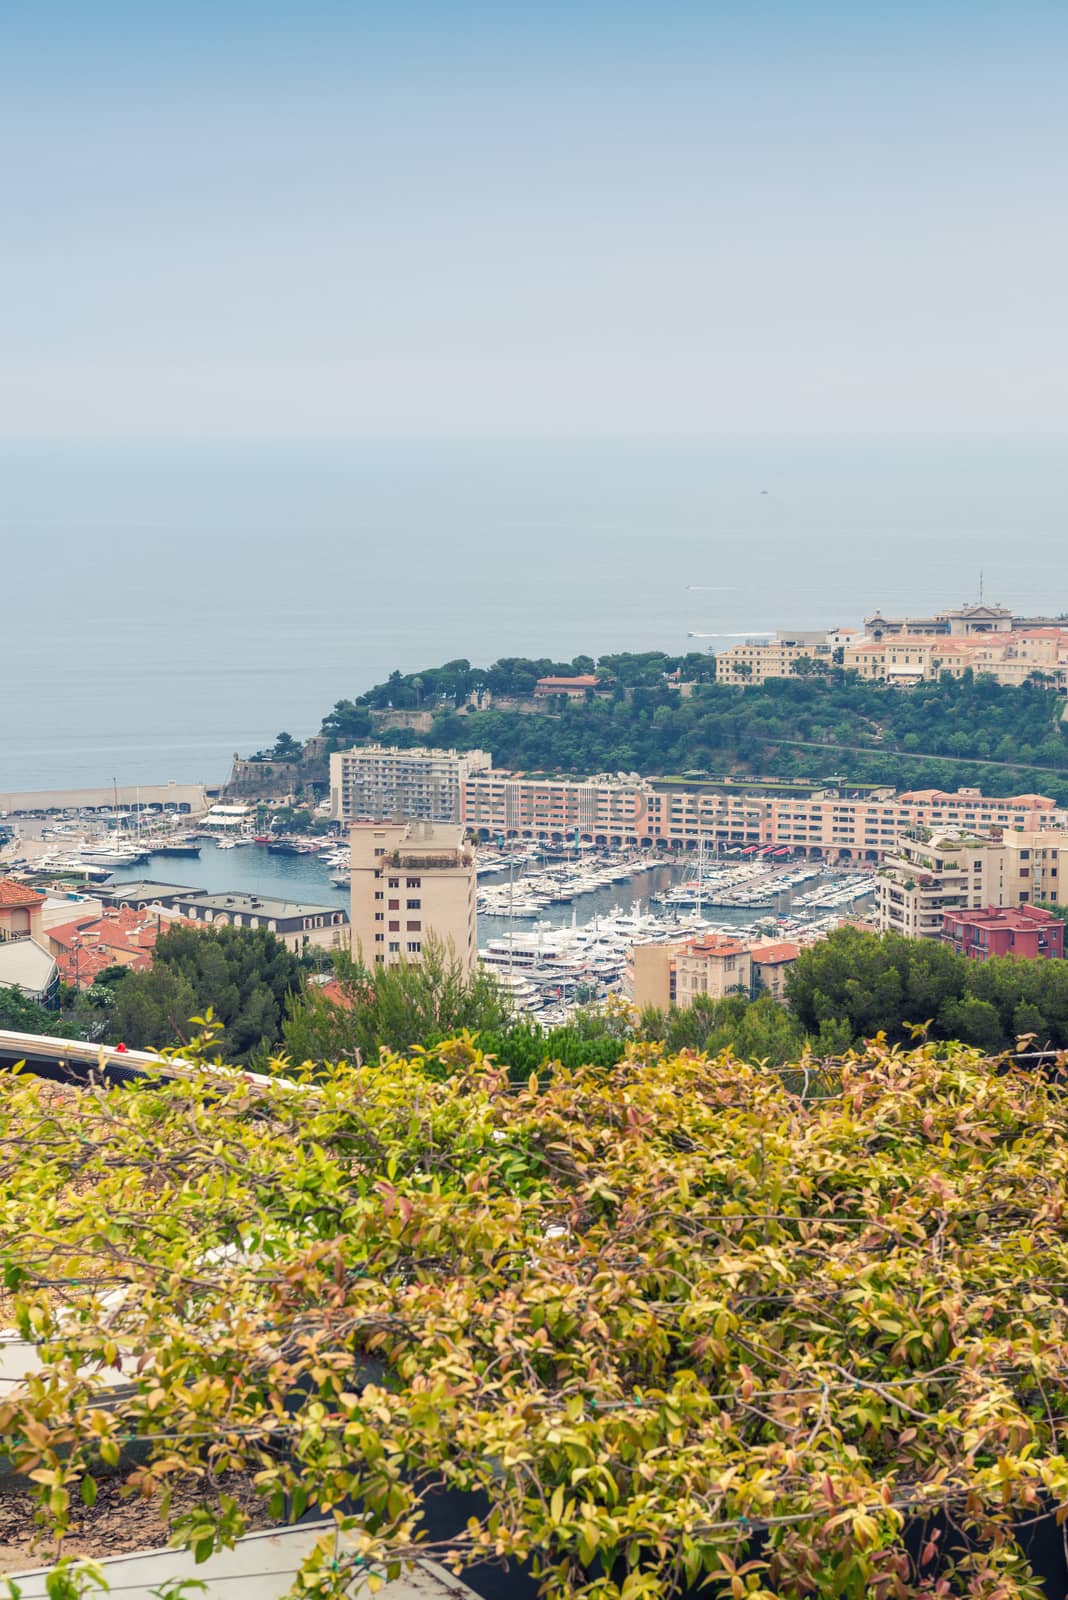 Buildings of Monte Carlo - Monaco, France.